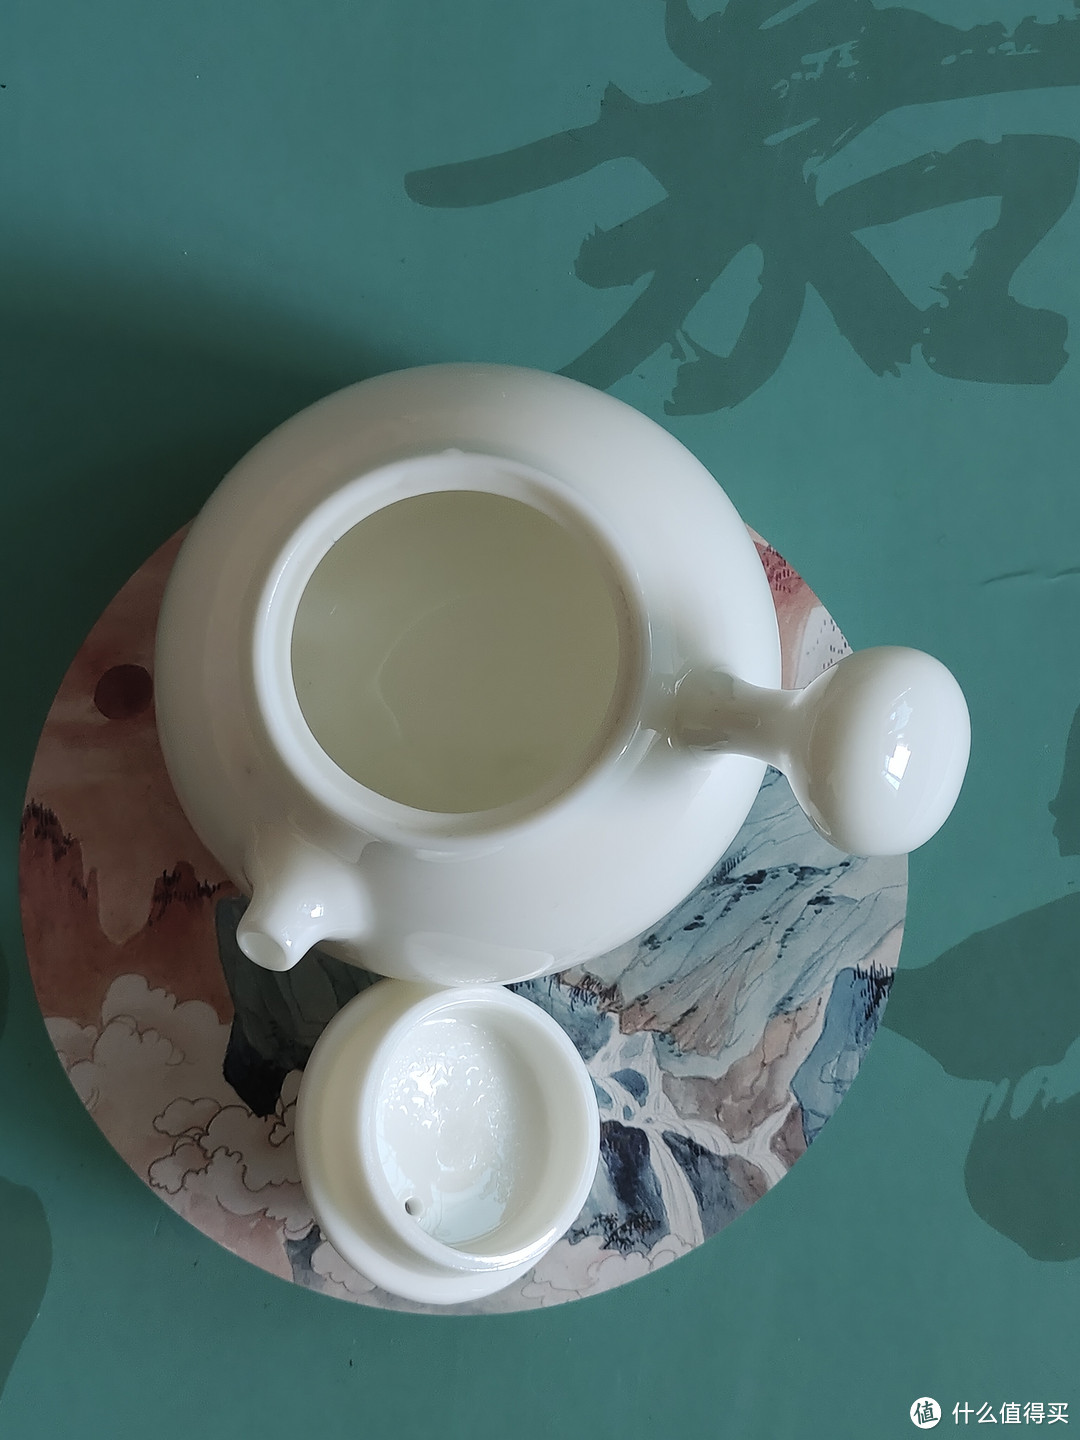 德化白羊脂玉茶壶品鉴：晶莹剔透，纯白温润典型性作的中国白